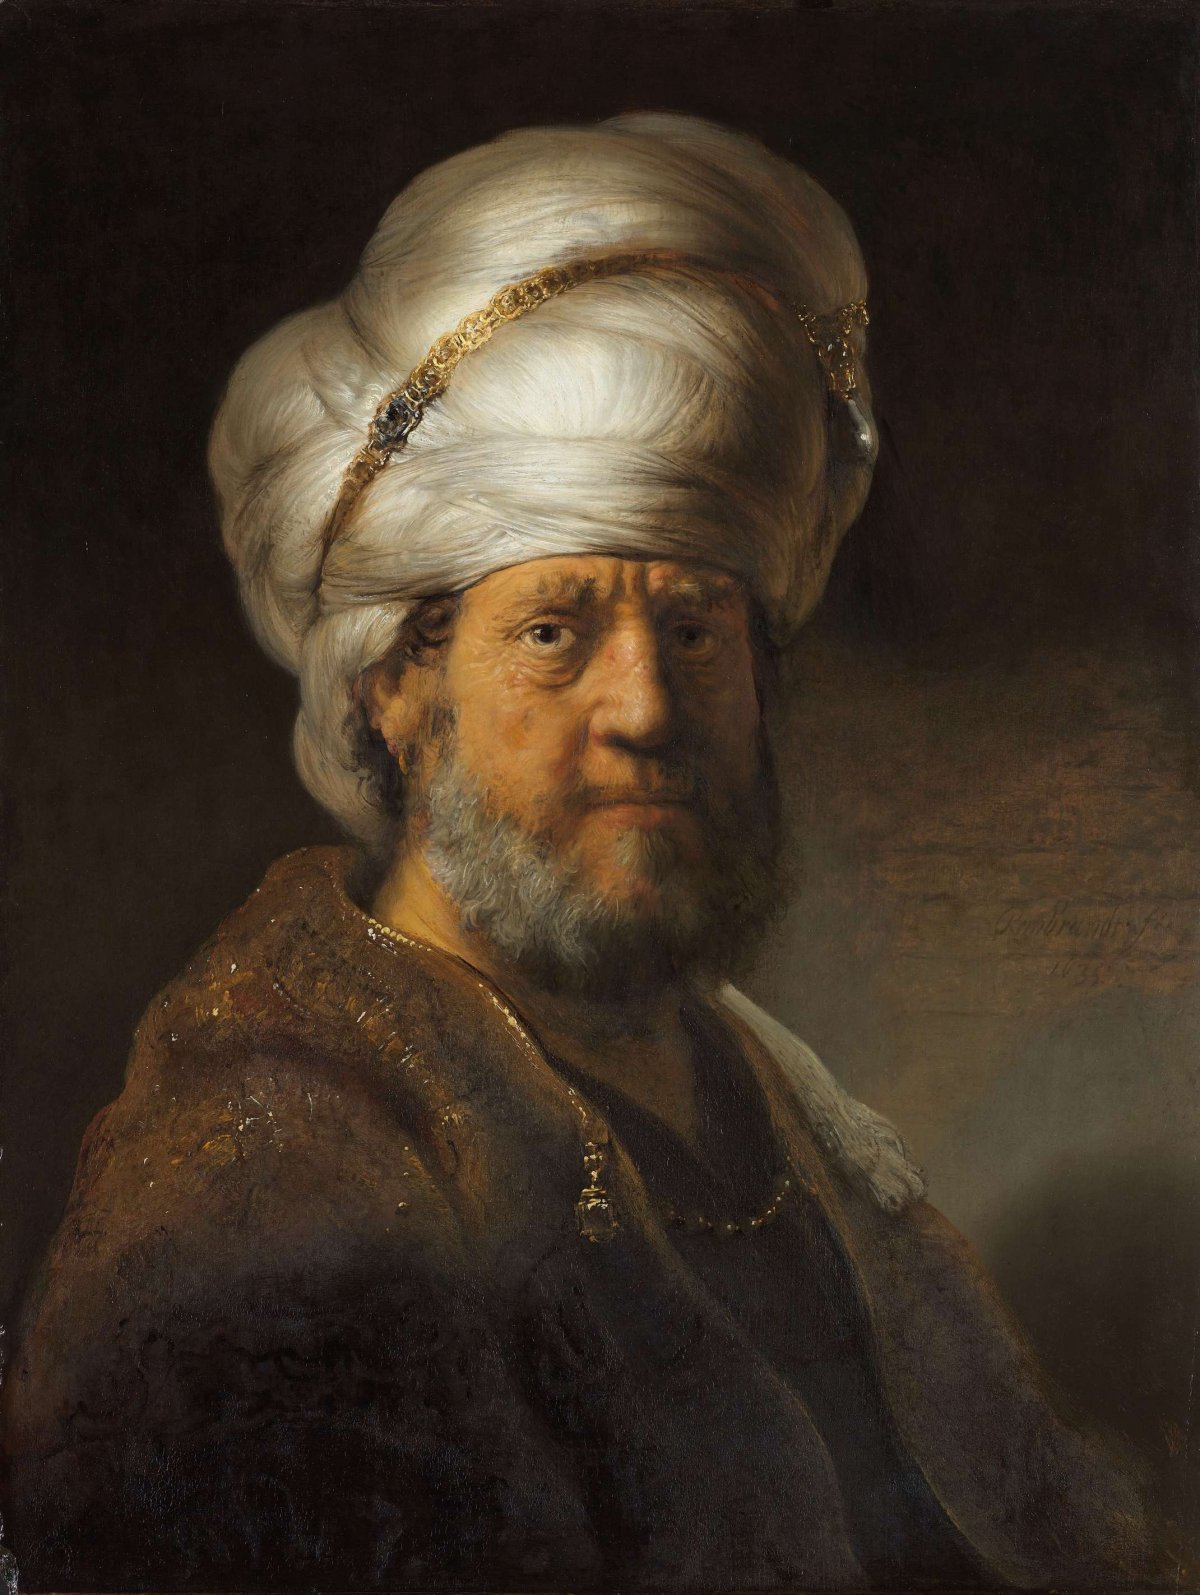 Man in Oriental Clothing, Rembrandt van Rijn, 1635